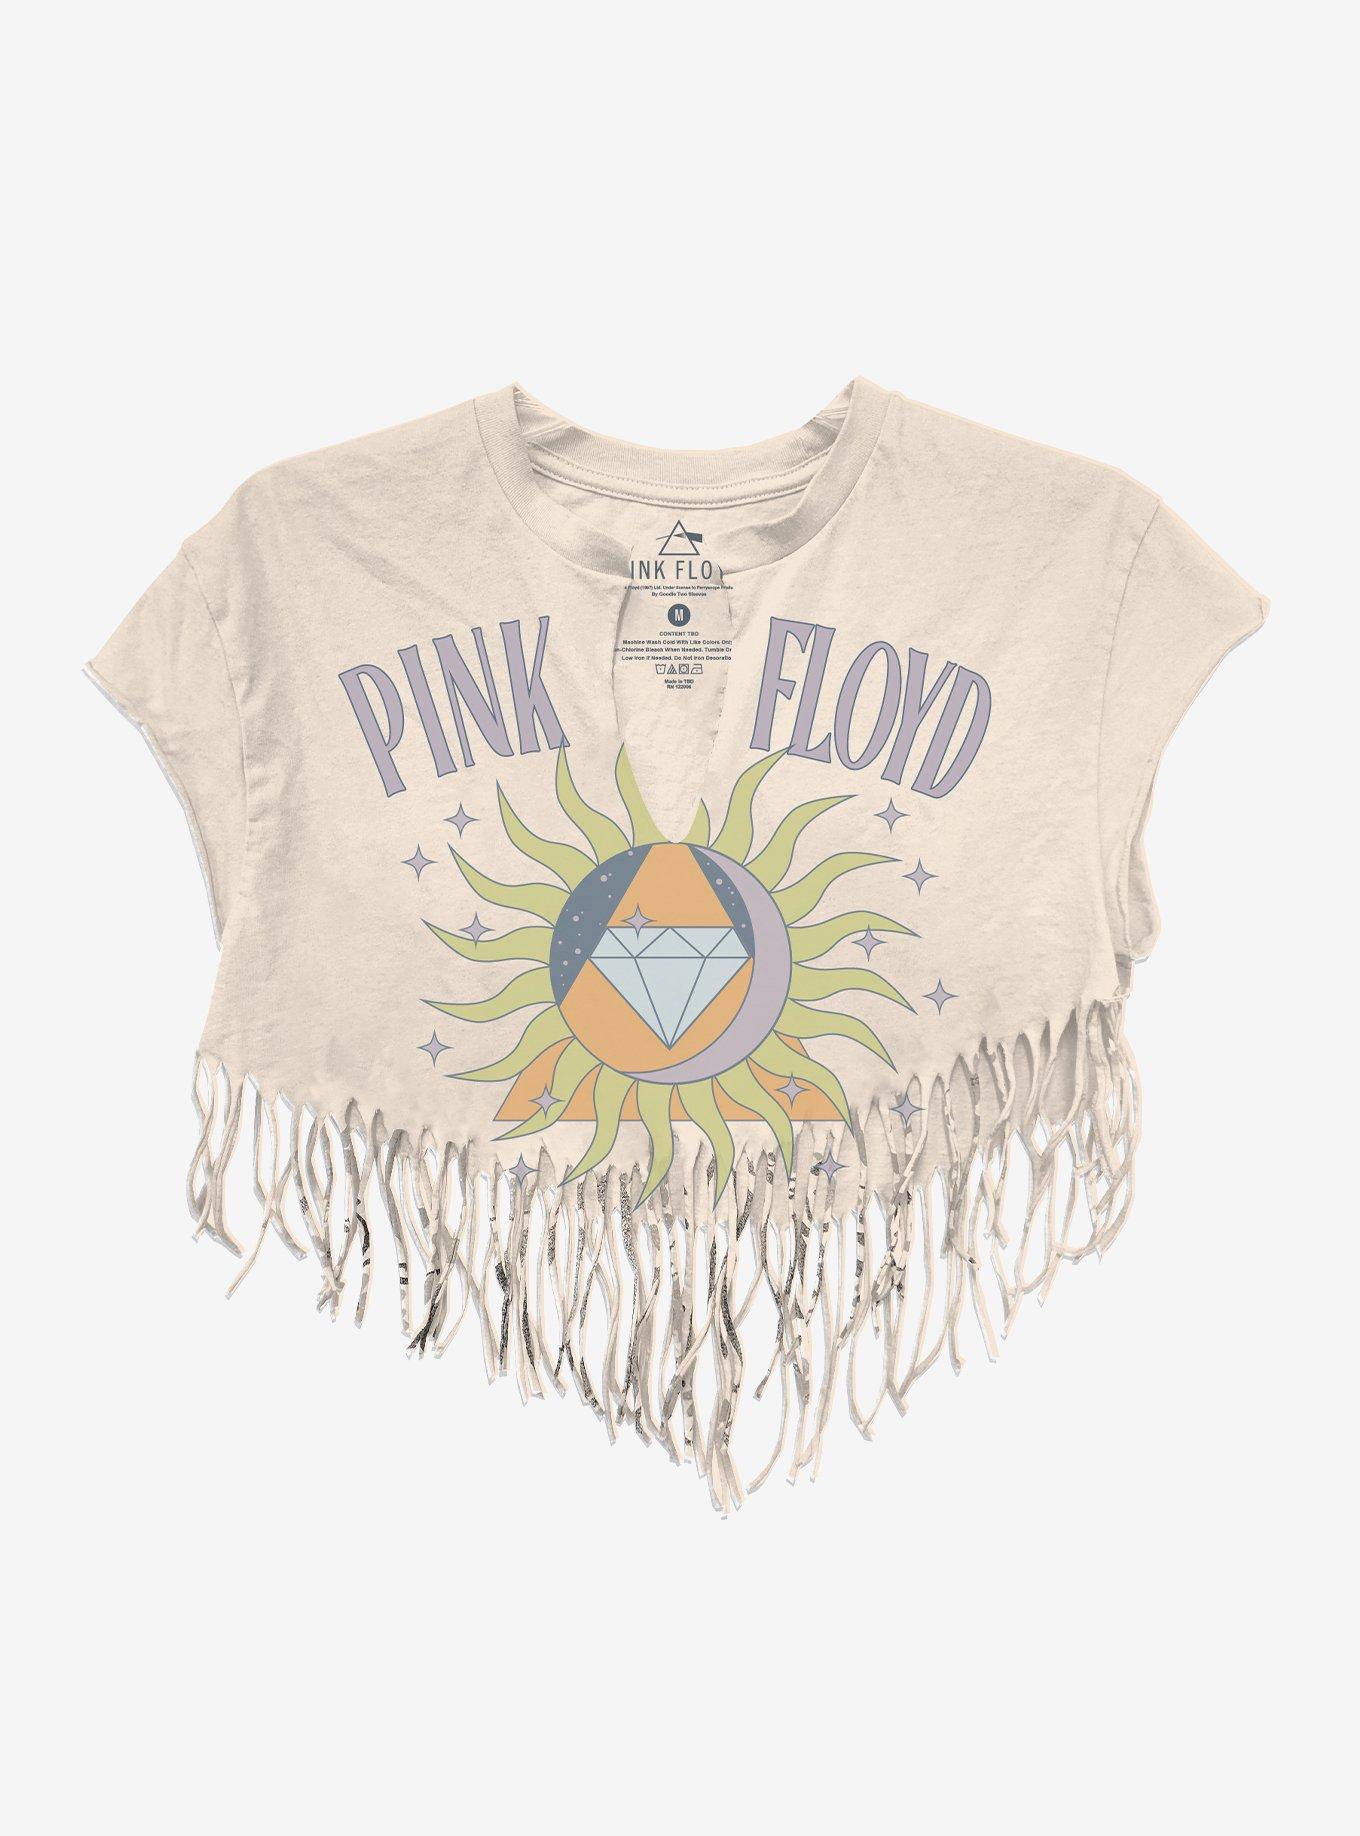 Pink Floyd Fringe Girls Crop T-Shirt, NATURAL, hi-res